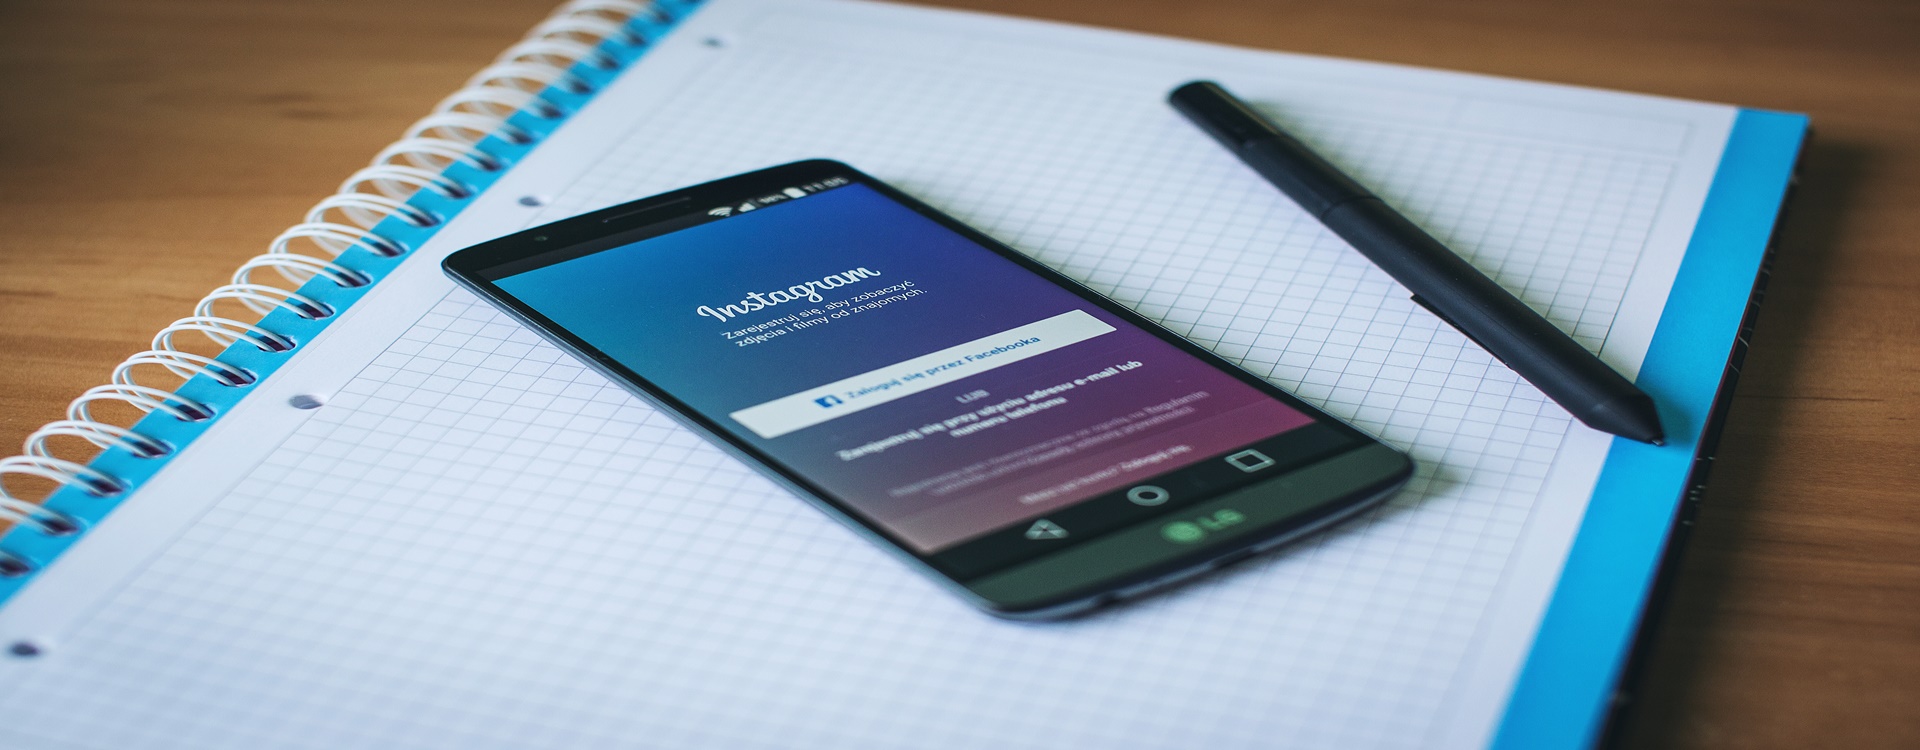 Instagram đang soán ngôi Facebook trong kinh doanh online? (P1)